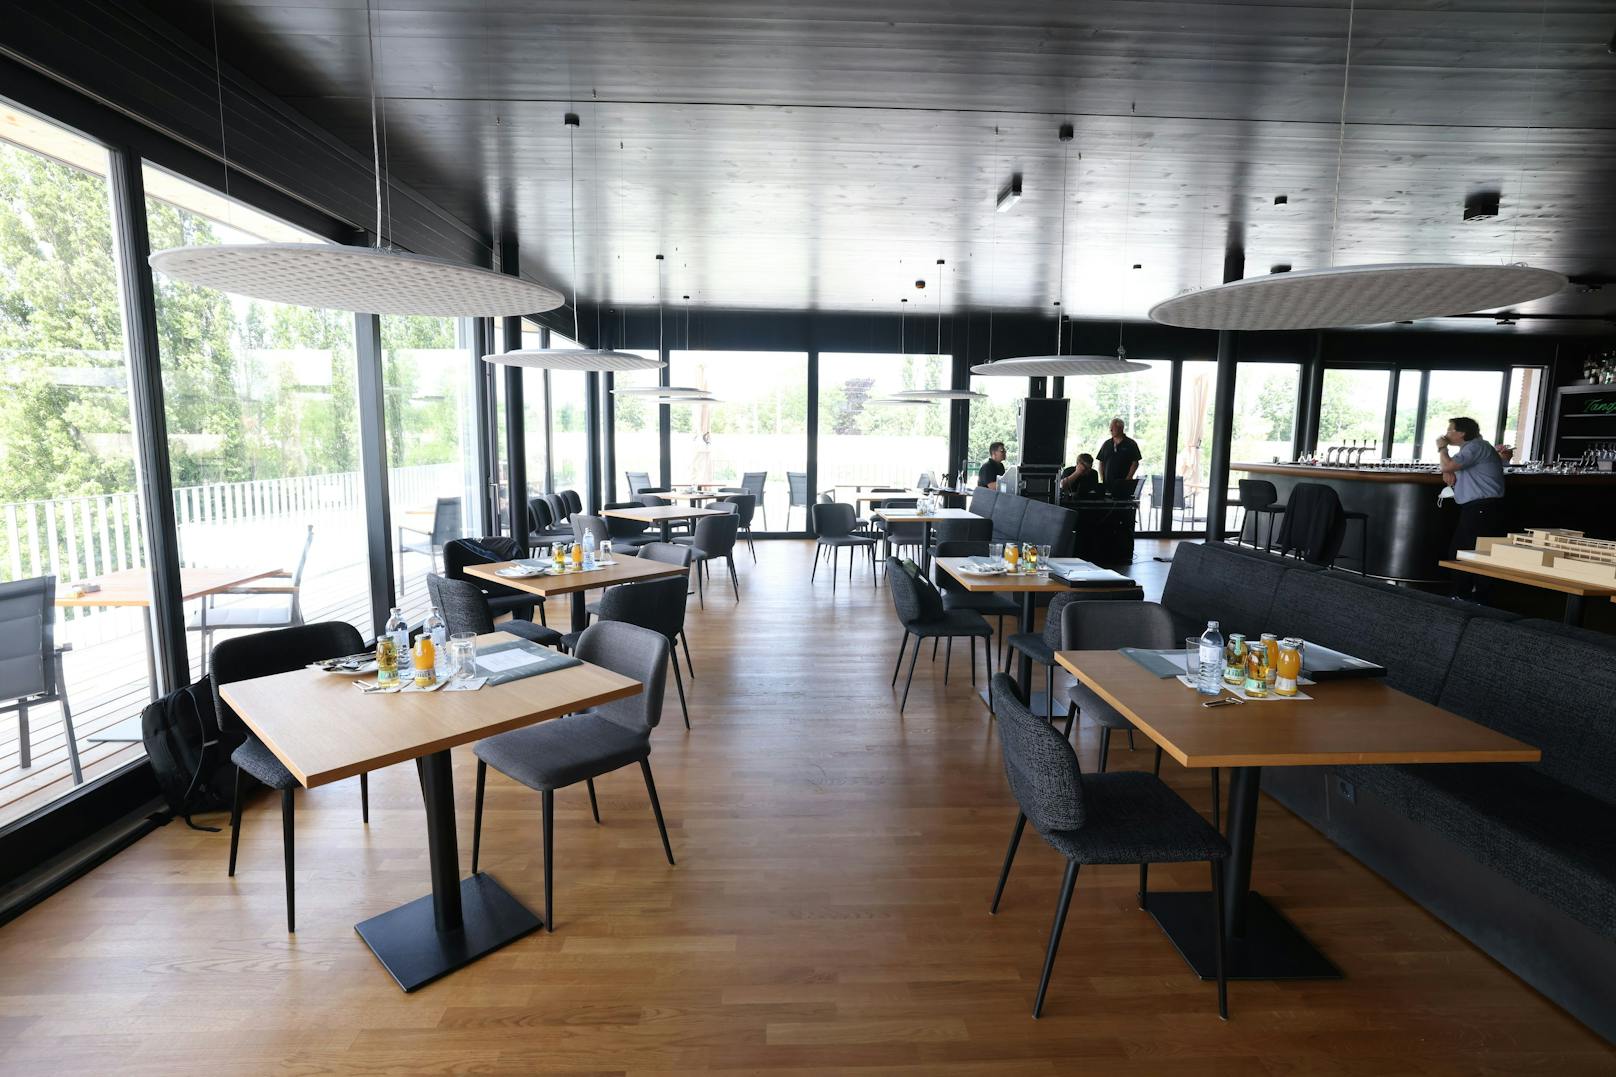 Im "V8cht" Restaurant sind alle Fronten verglast, eine Terrasse reicht rundum das Lokal.